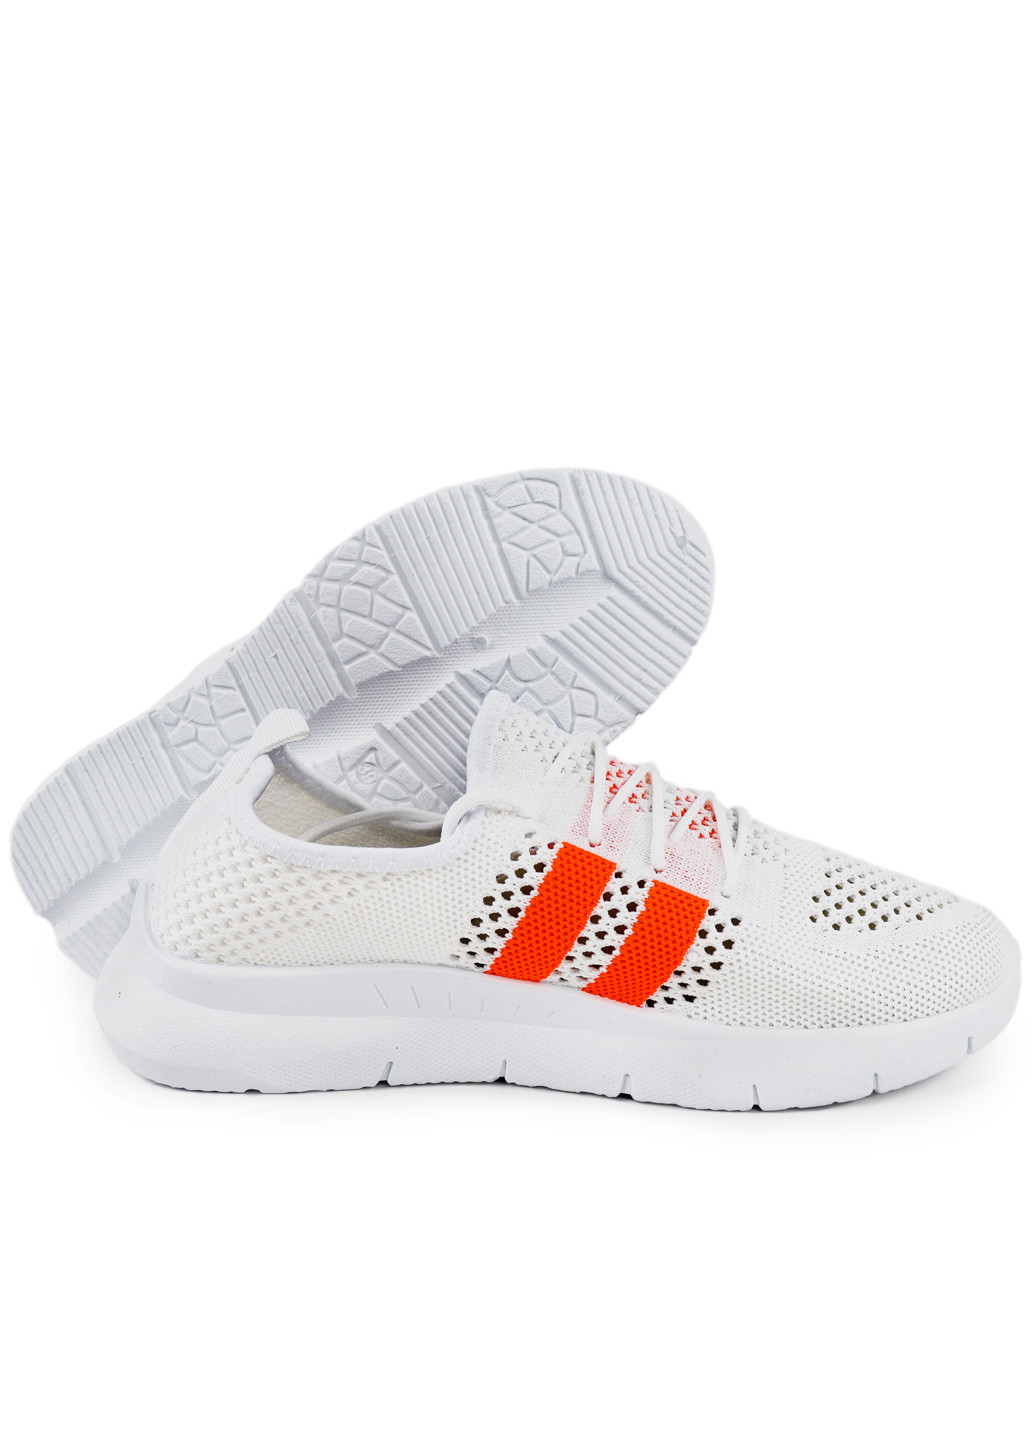 Білі осінні кросівки жіночі літні з текстилю кремово-помаранчеві 1351080902 Gipanis